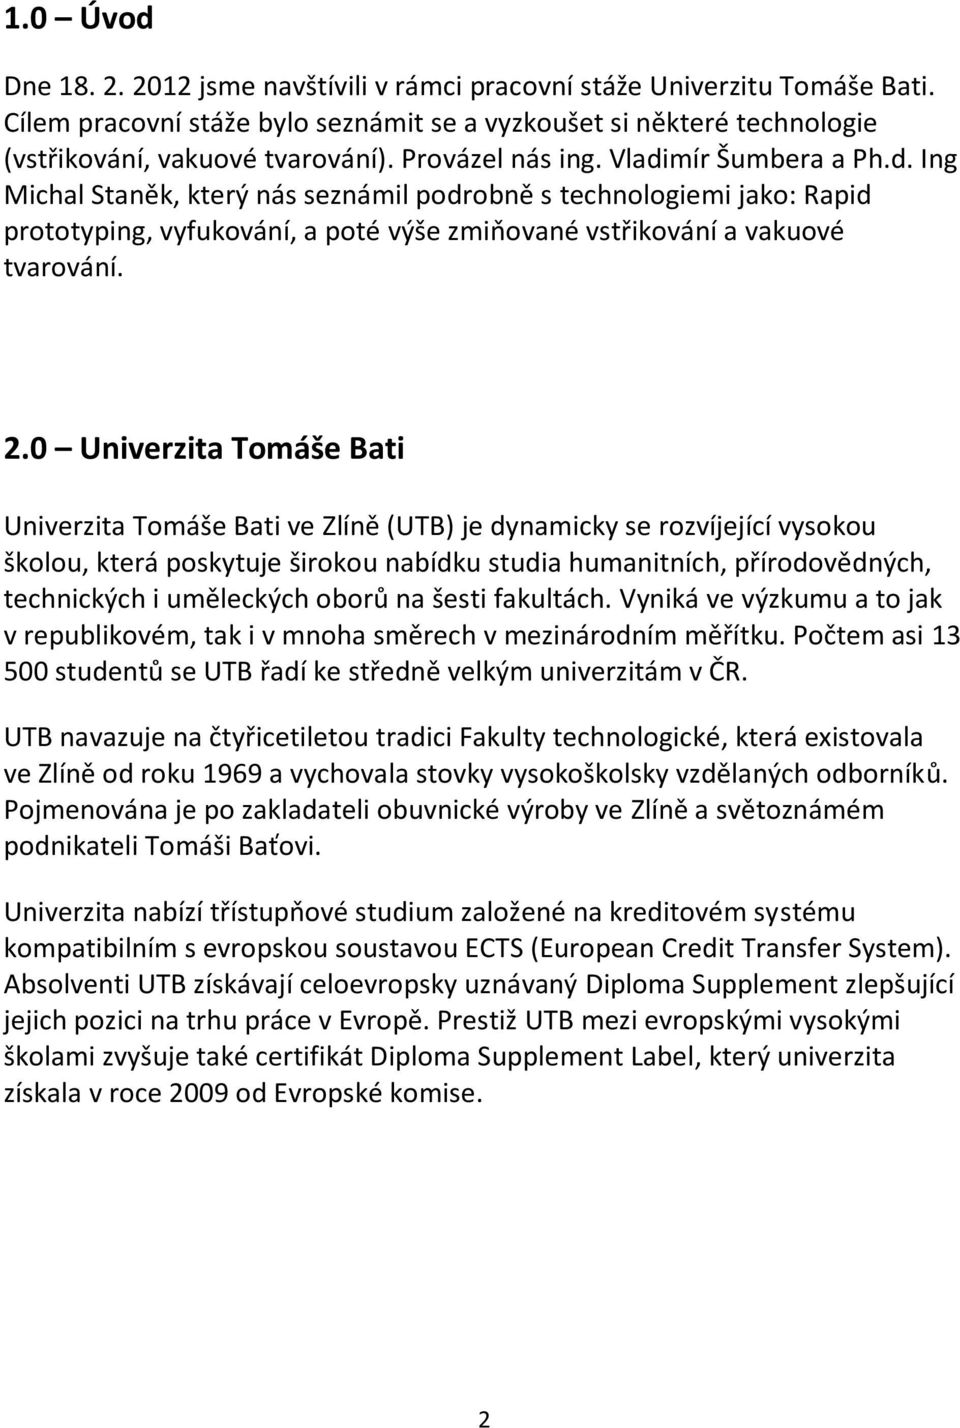 0 Univerzita Tomáše Bati Univerzita Tomáše Bati ve Zlíně (UTB) je dynamicky se rozvíjející vysokou školou, která poskytuje širokou nabídku studia humanitních, přírodovědných, technických i uměleckých